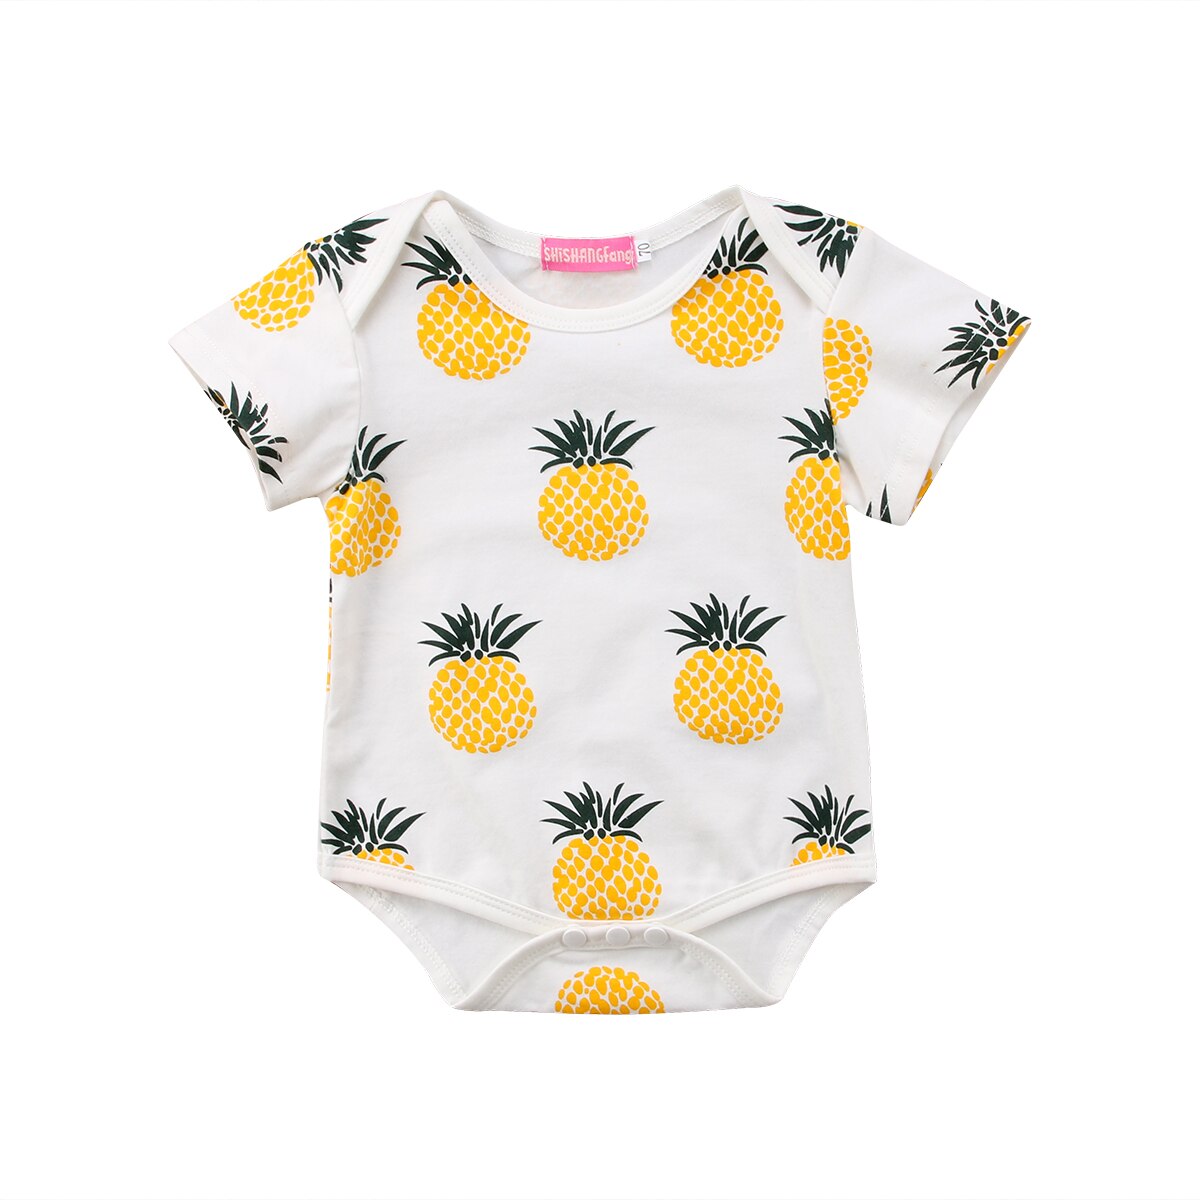 Sommer nyfødt romper børn baby pige dreng tøj kortærmet ananas telt romper jumpsuit outfits 0-24m